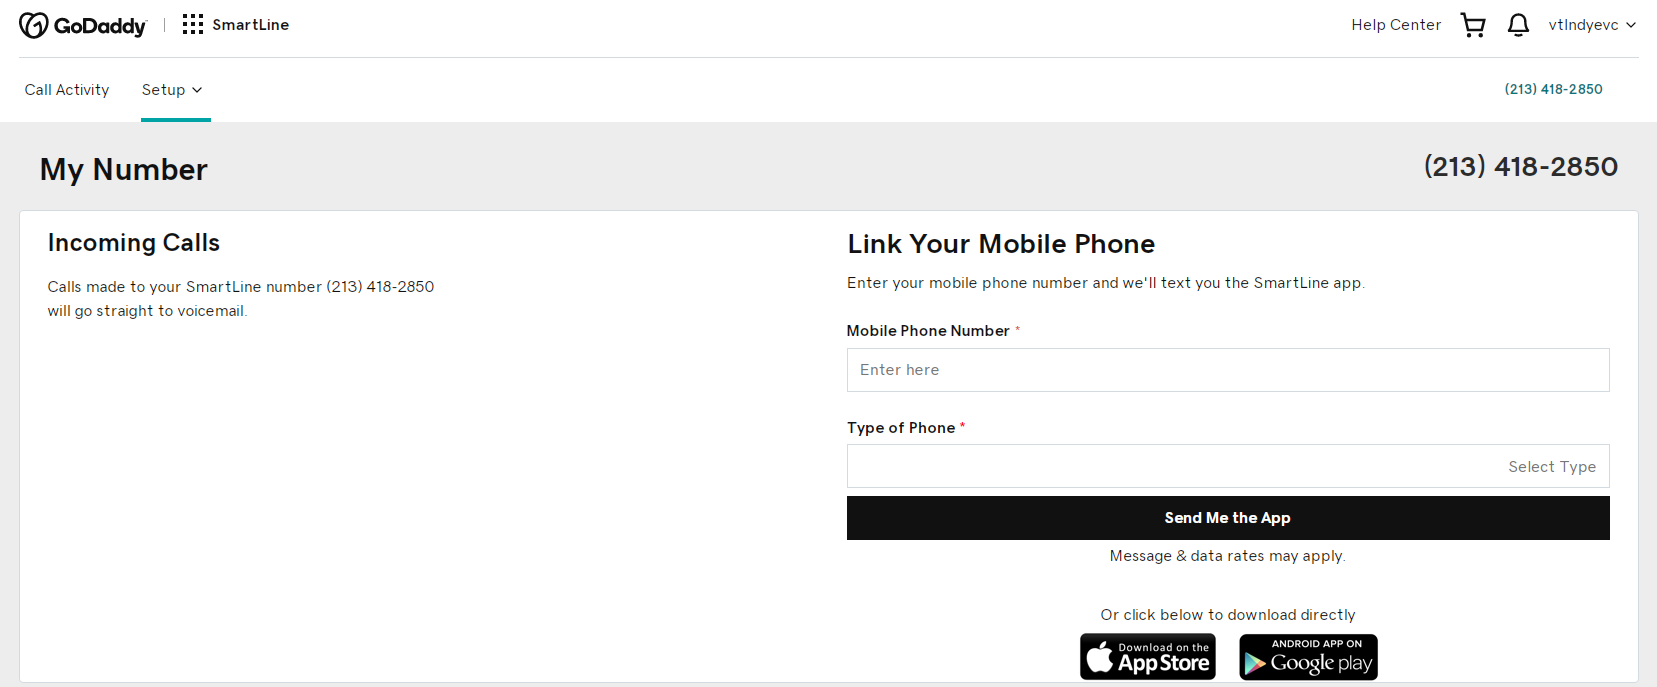 通过godaddy smartline获得免费美国电话号码，手机接码